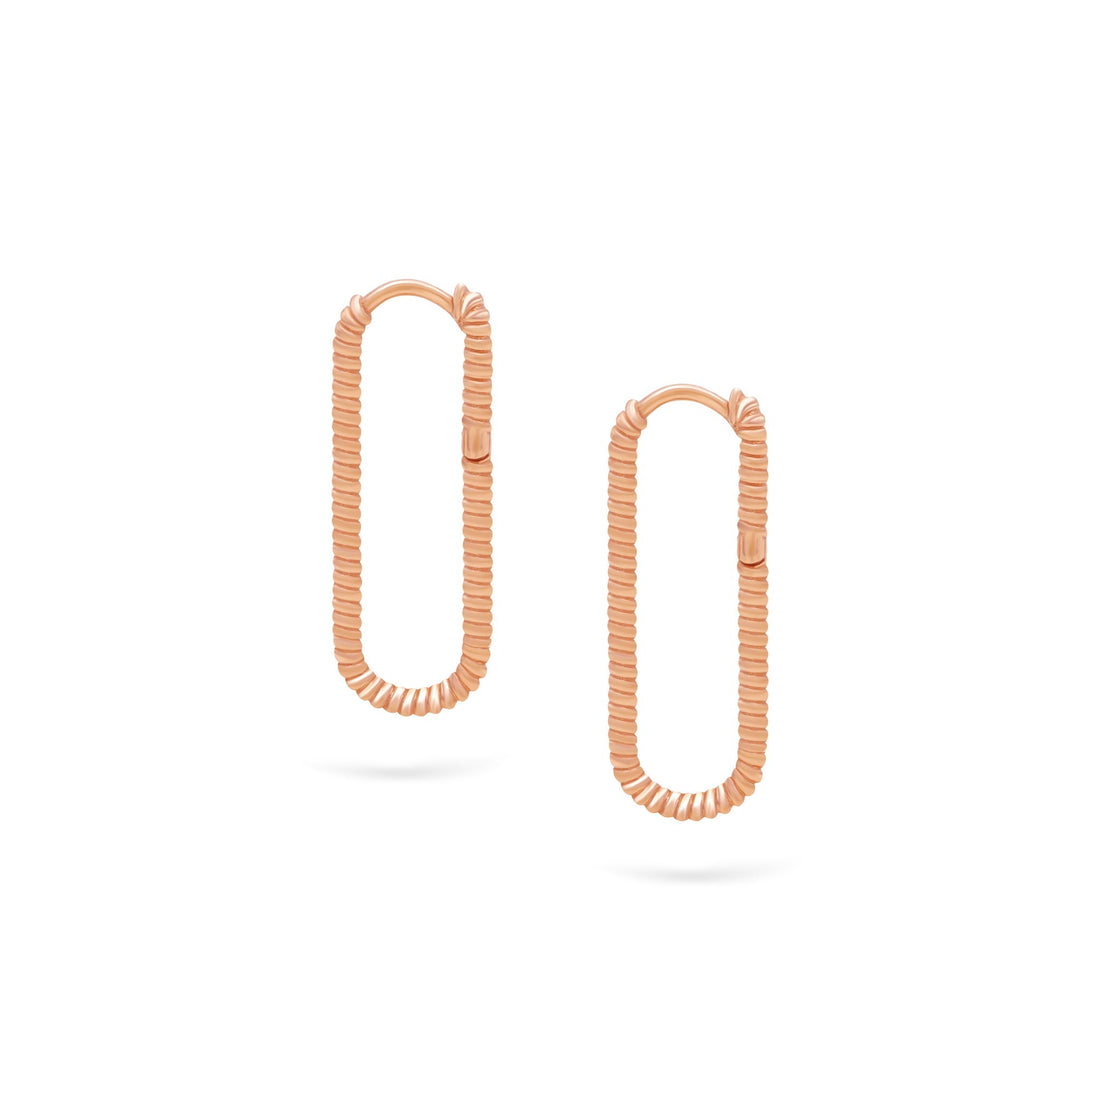 Jewelry Twist Hoops | Large Gold Earrings | 14K - Rose / Pair - Diamond earrings Zengoda Shop online from Artisan